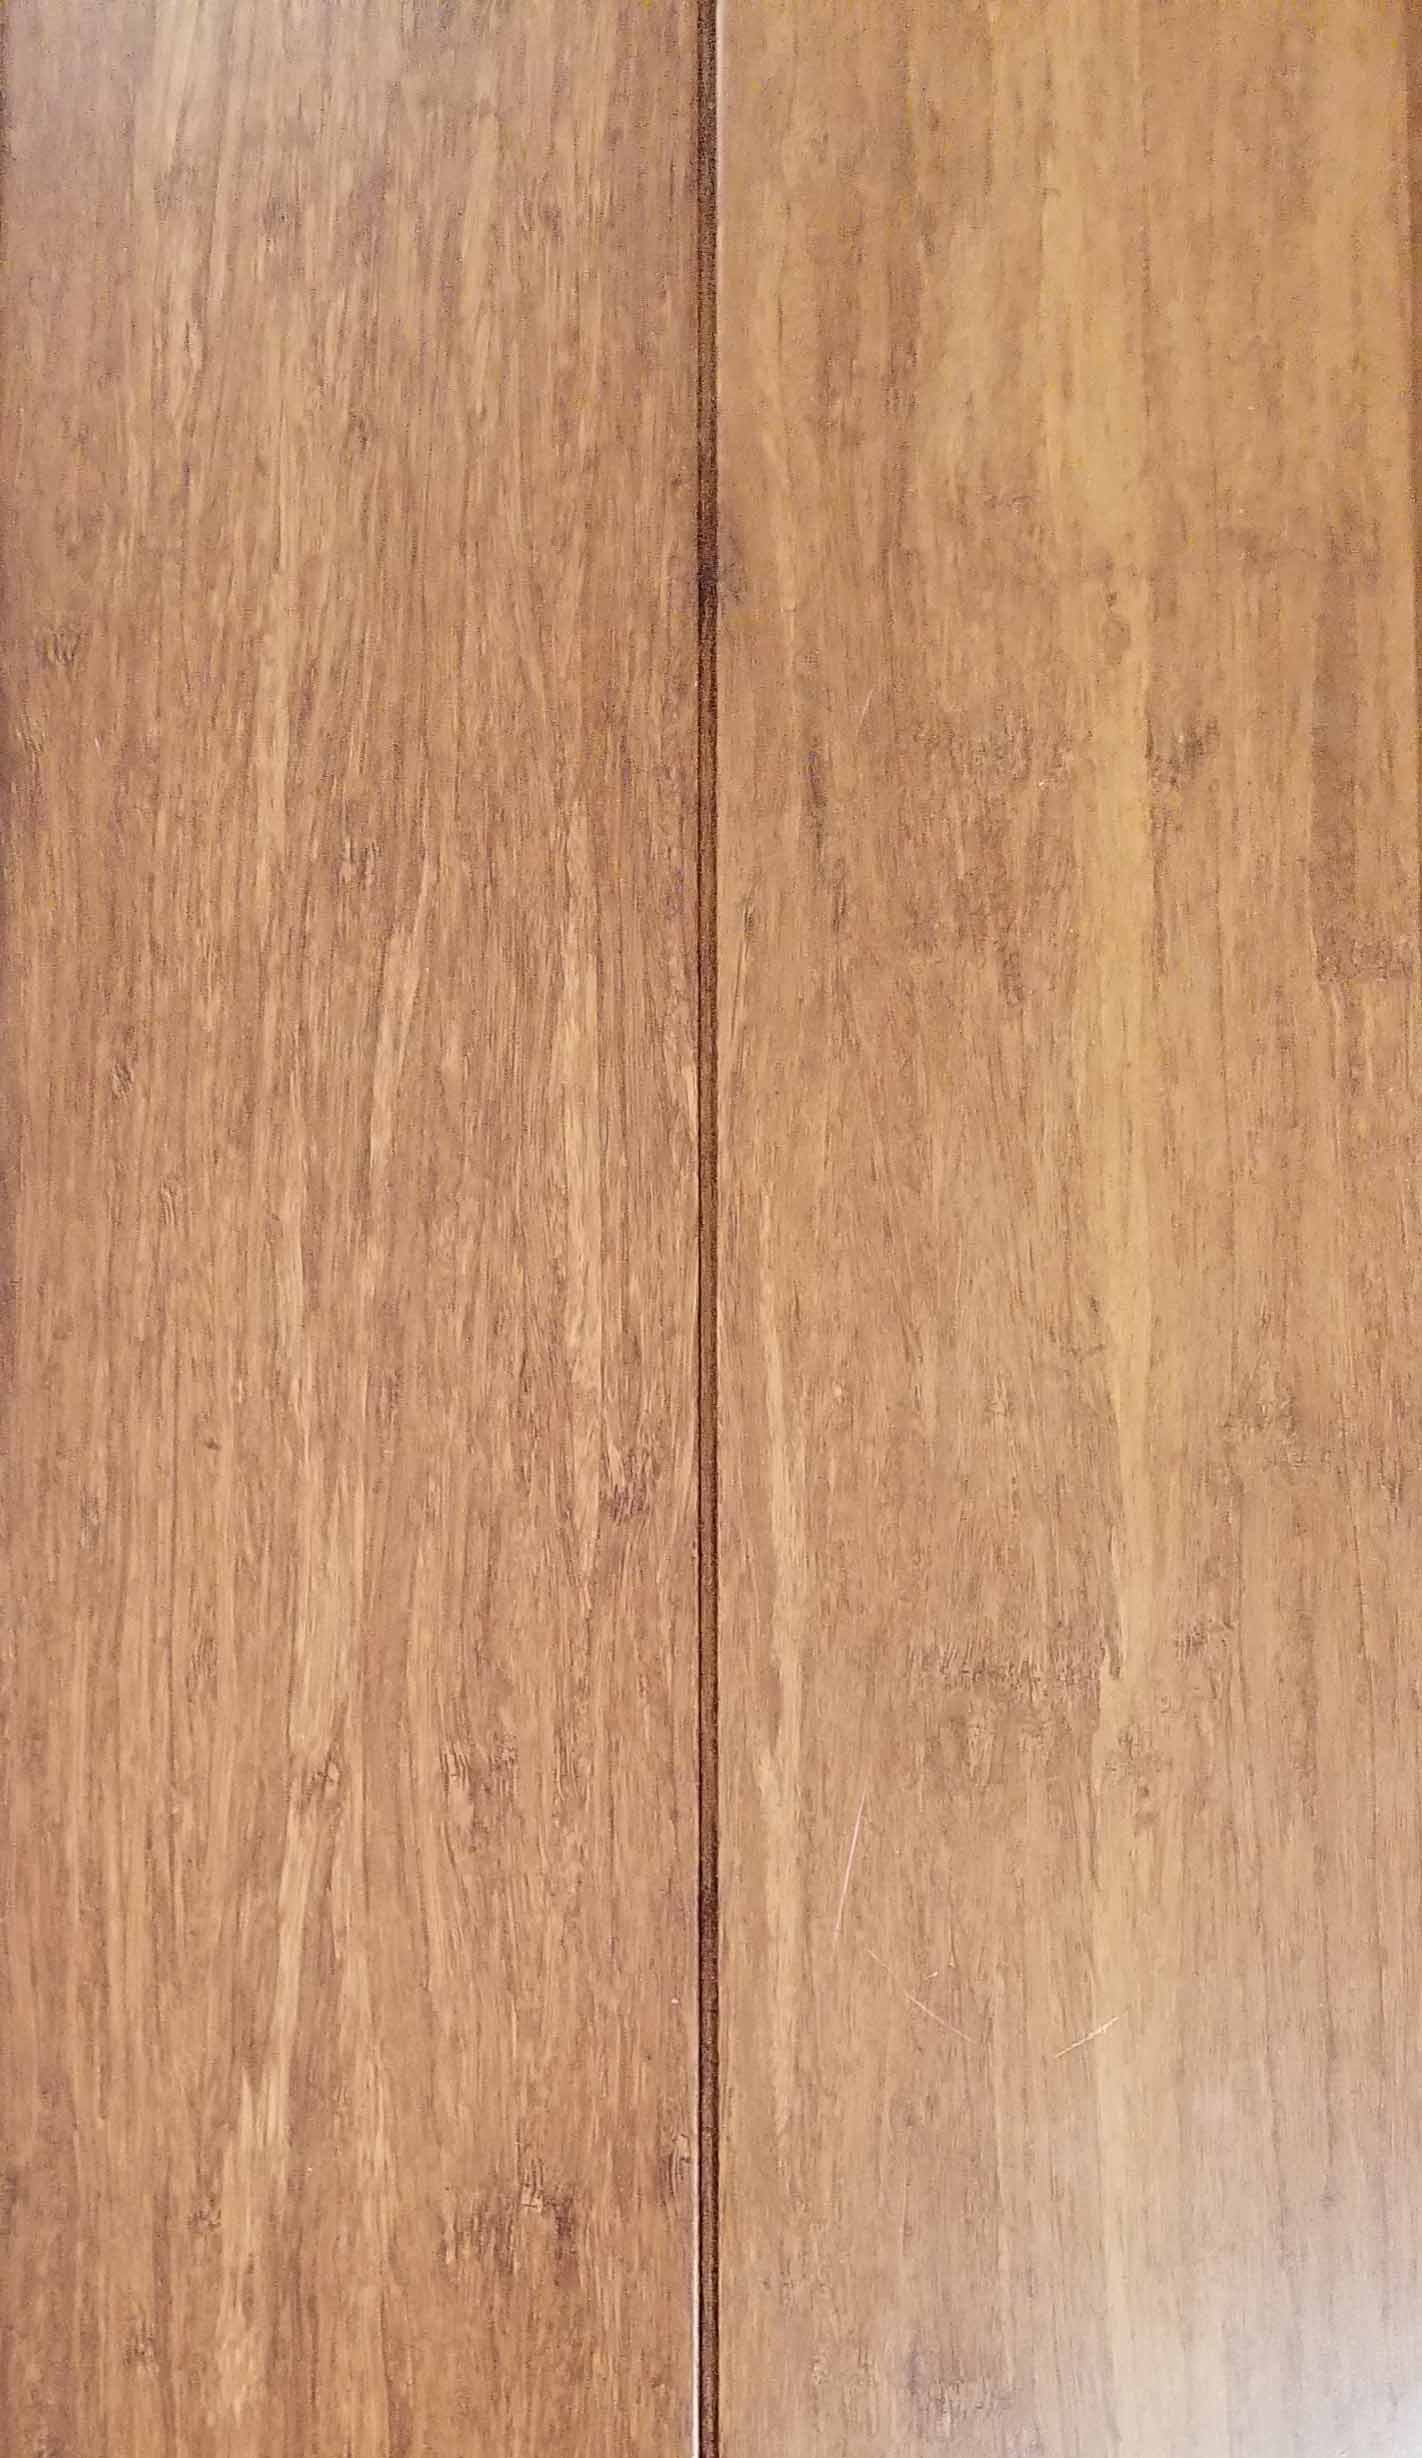 Wood Look Vinyl Plank and Natural Stone Tile — Hardwood Floor With SKU Number 30100613013 in Saint Petersburg, FL